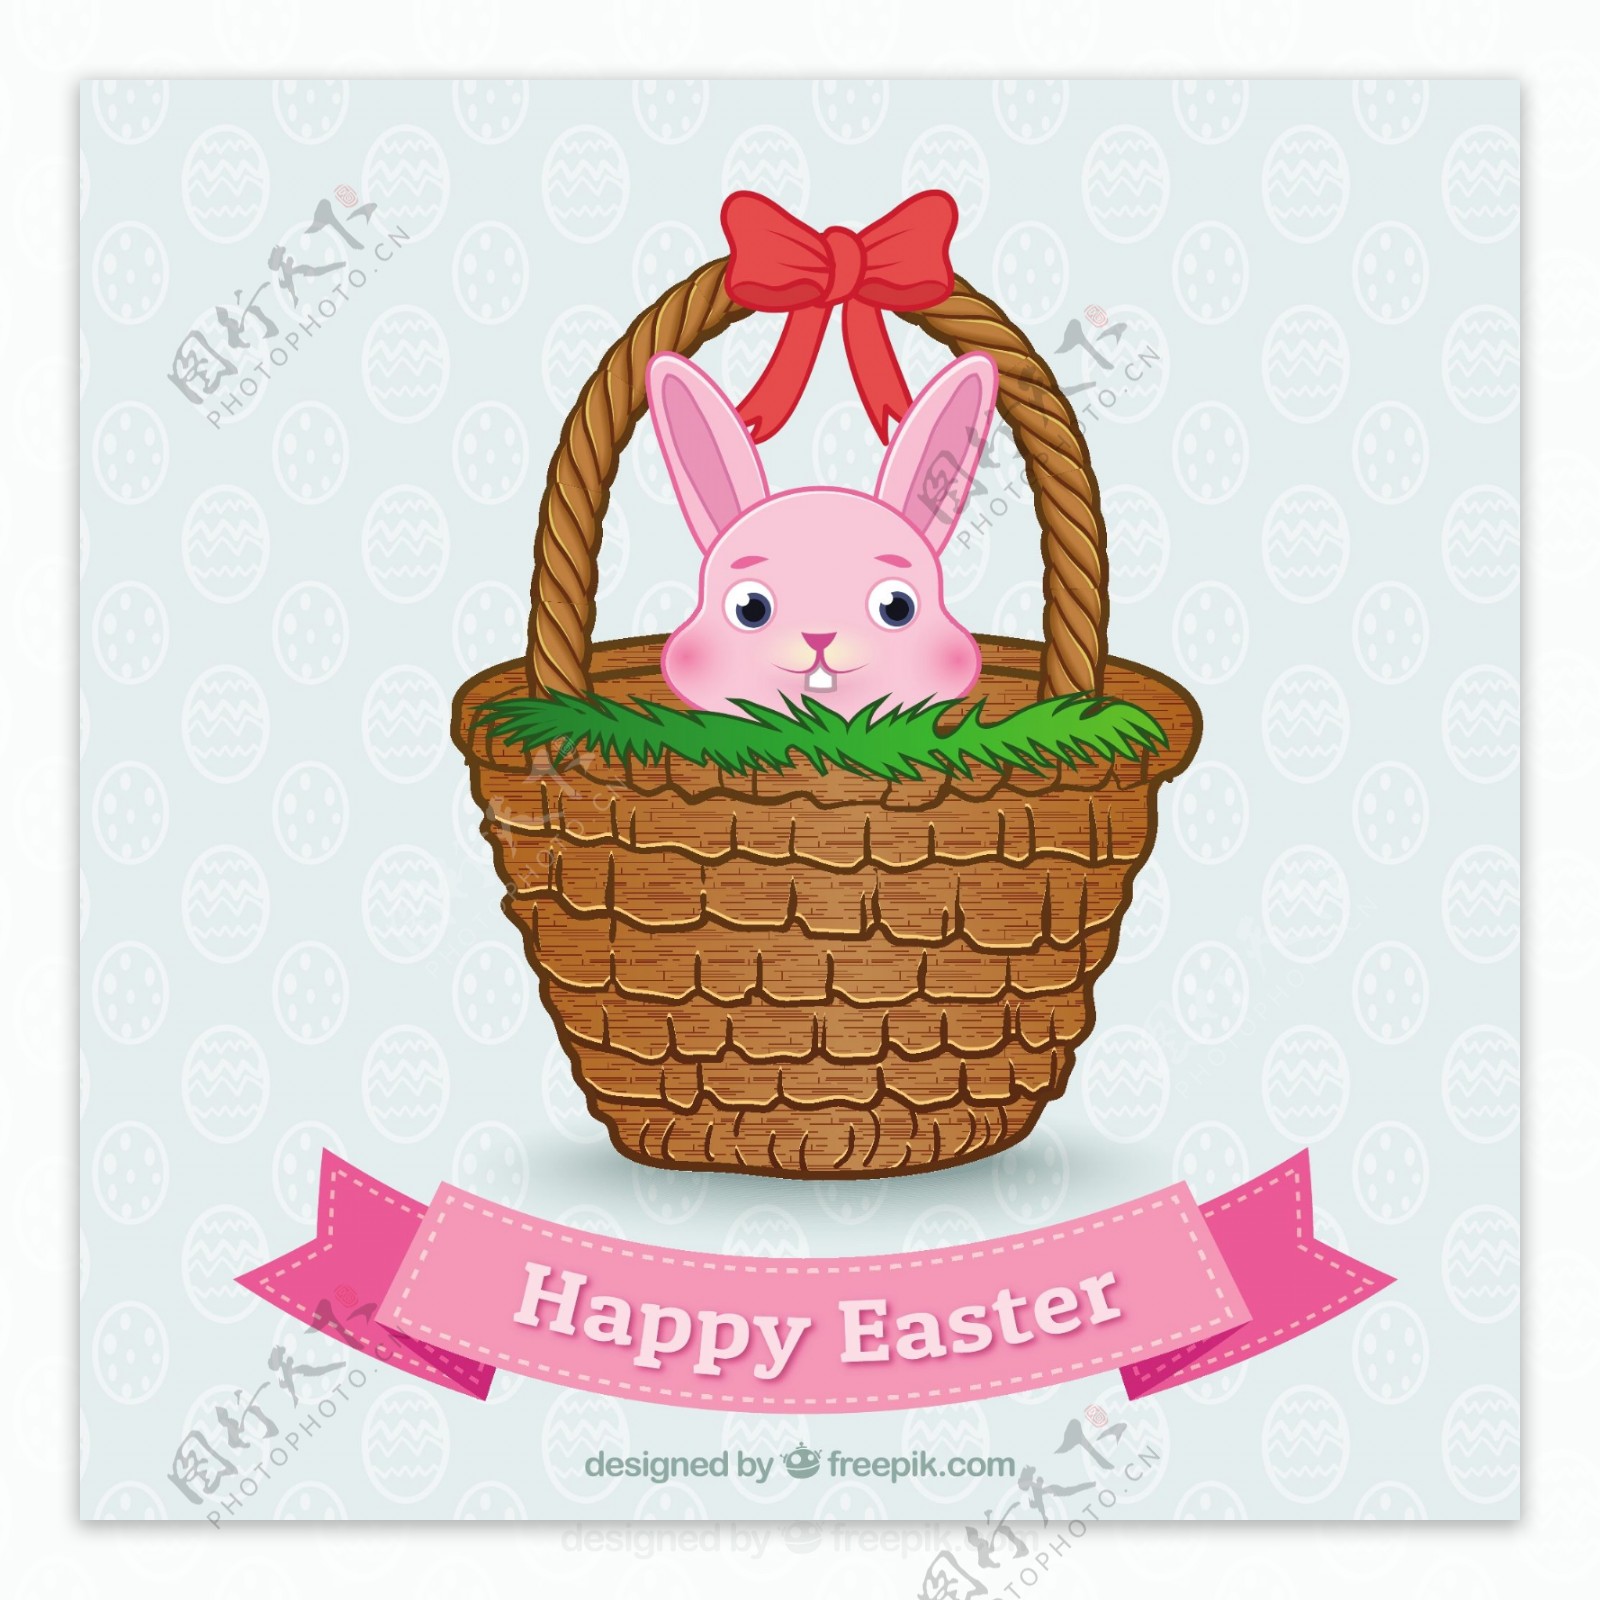 复活节兔子在一个篮子里